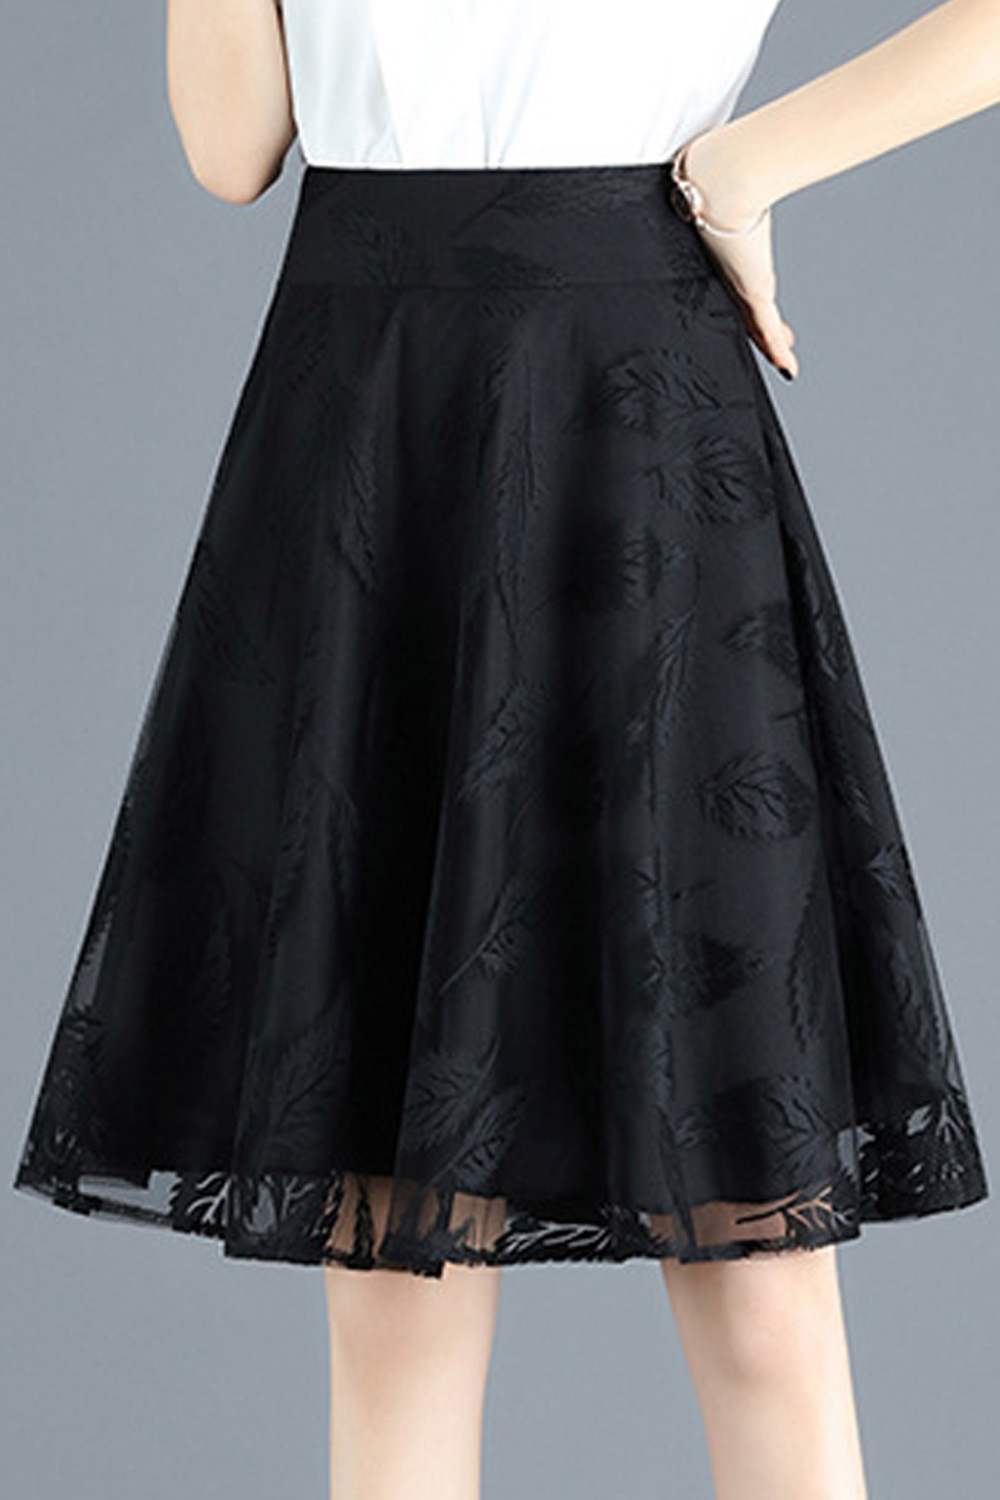 Women Elegant High Waist Solid Knee Length Zipper Casual A-Line Skirt 